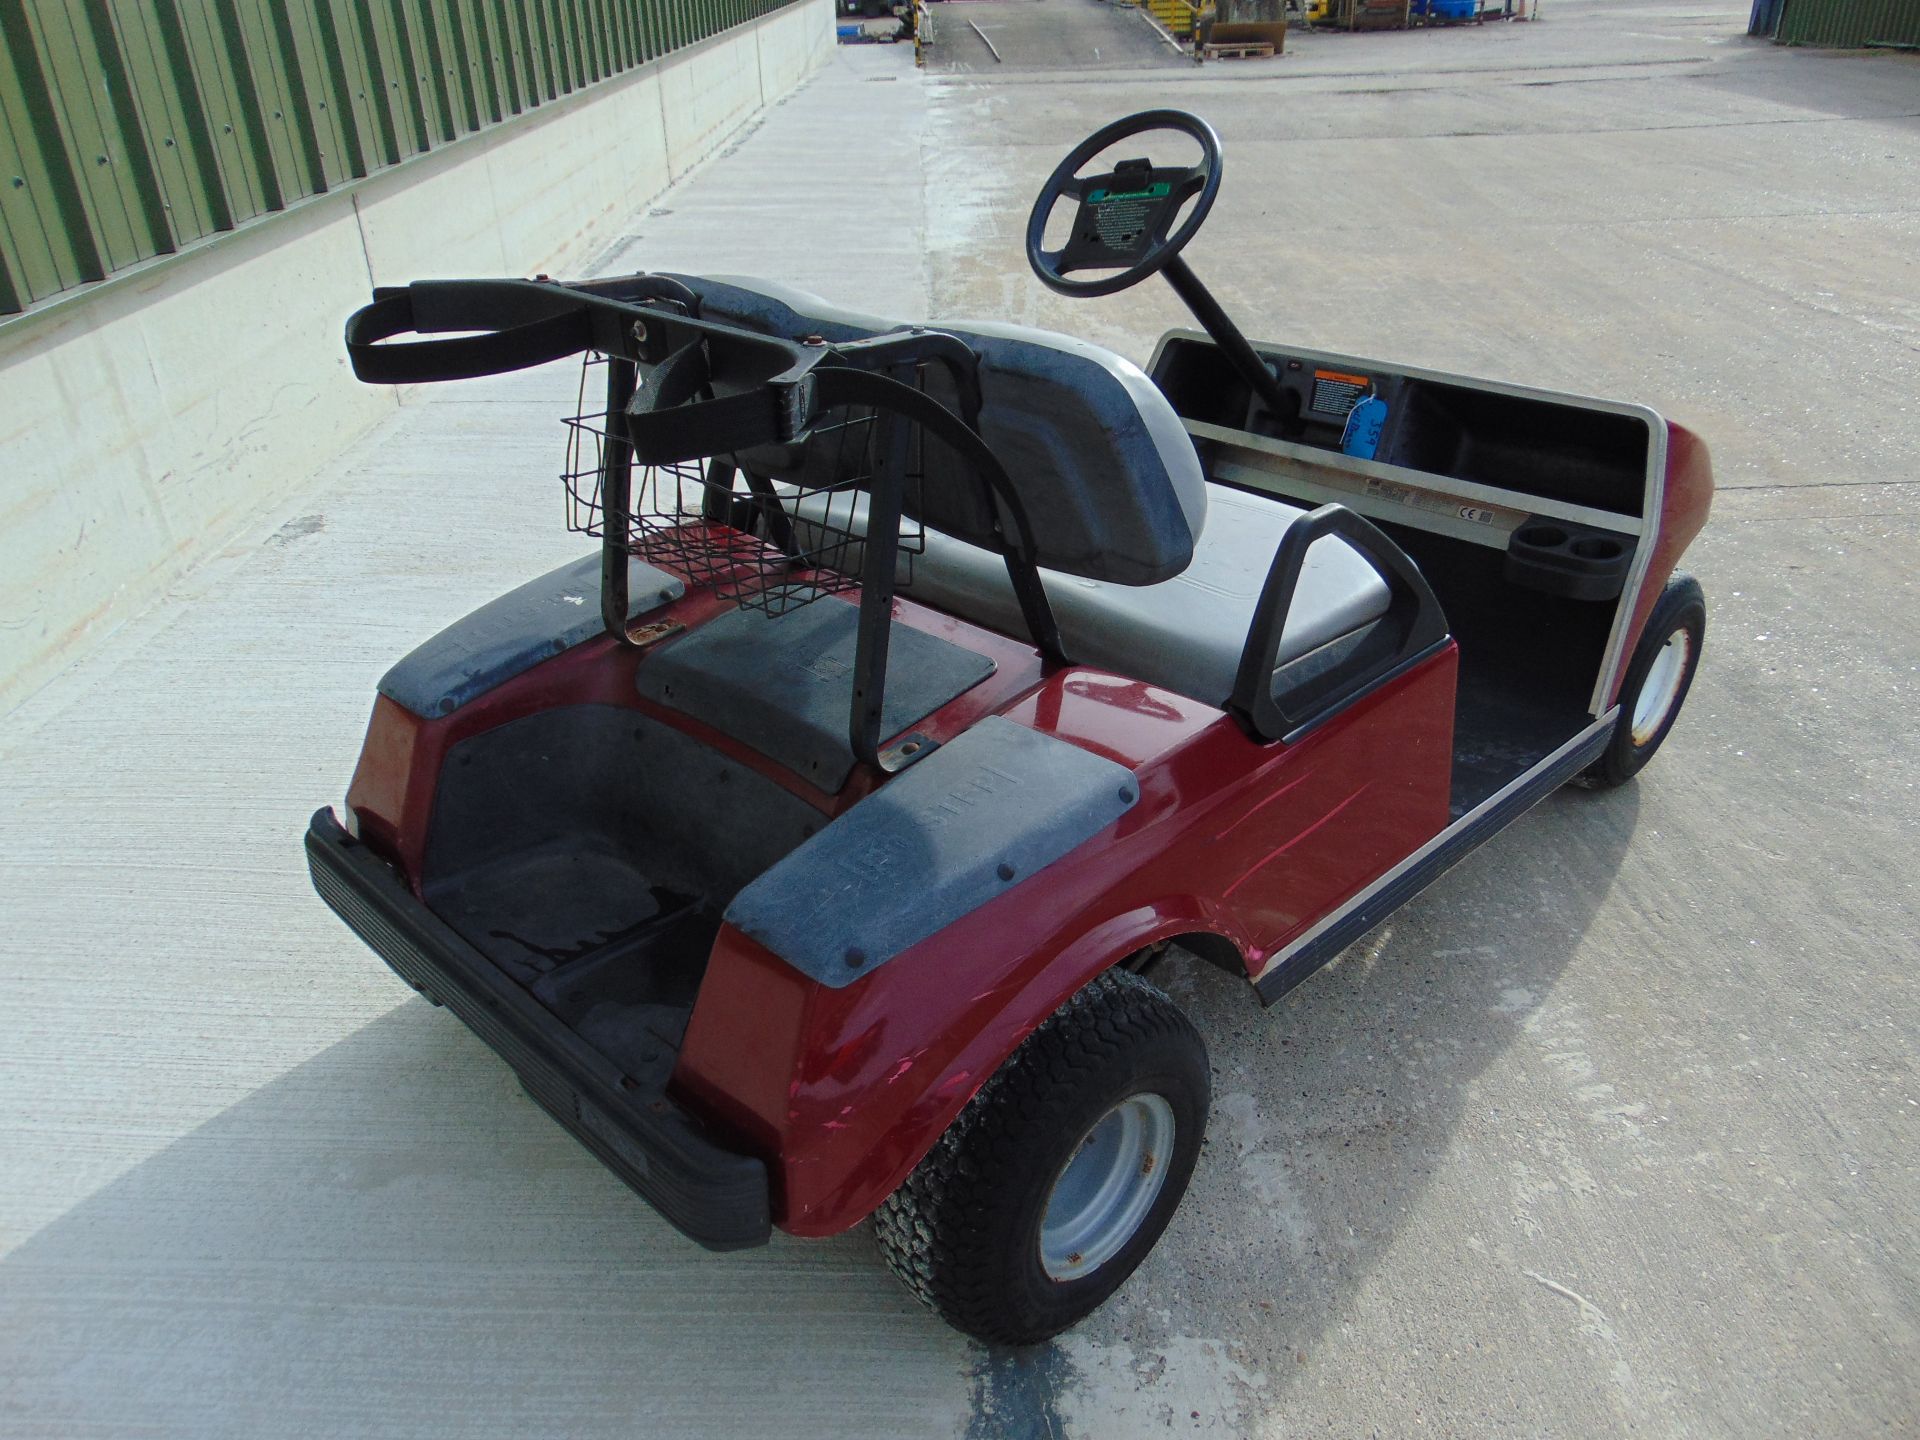 Club Car Golf Cart - Petrol Engine - Image 3 of 17